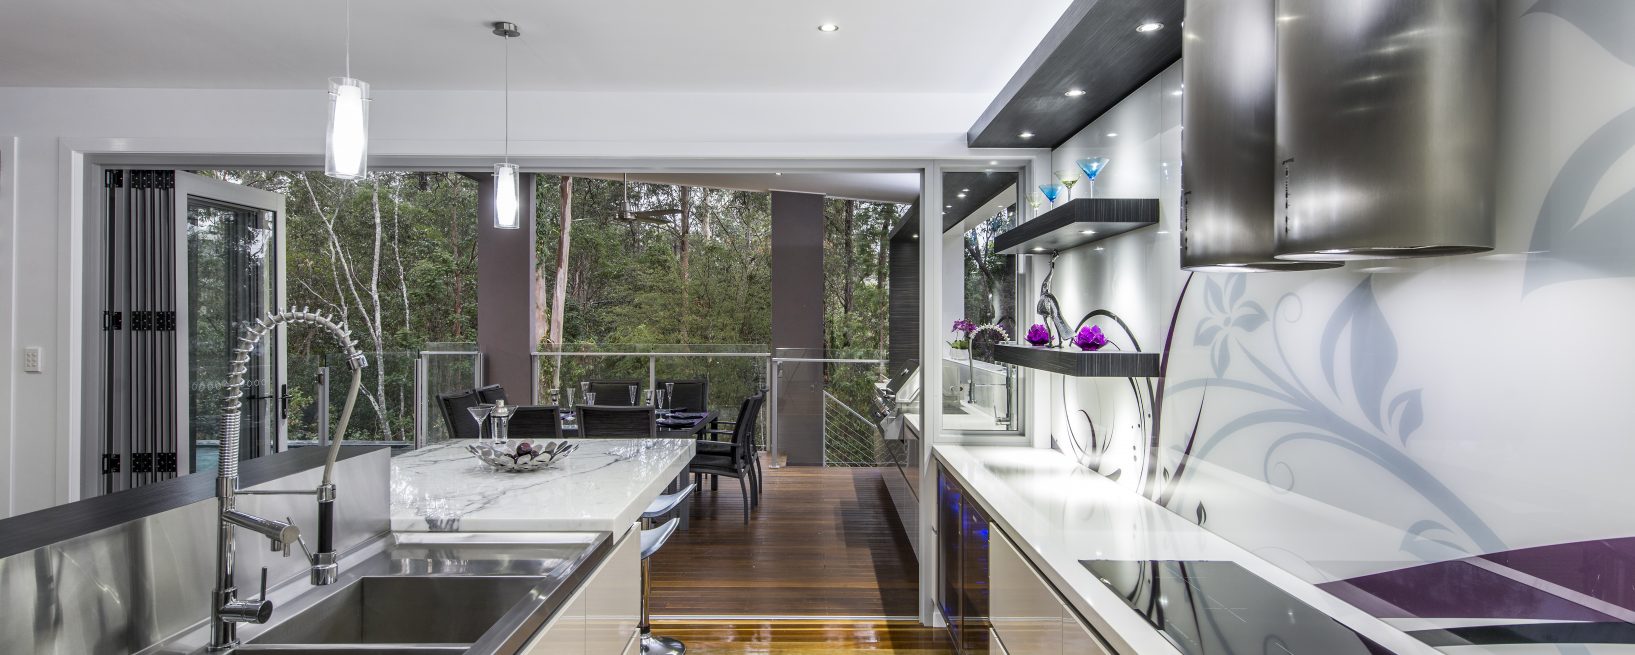 kitchen design australia brisbane